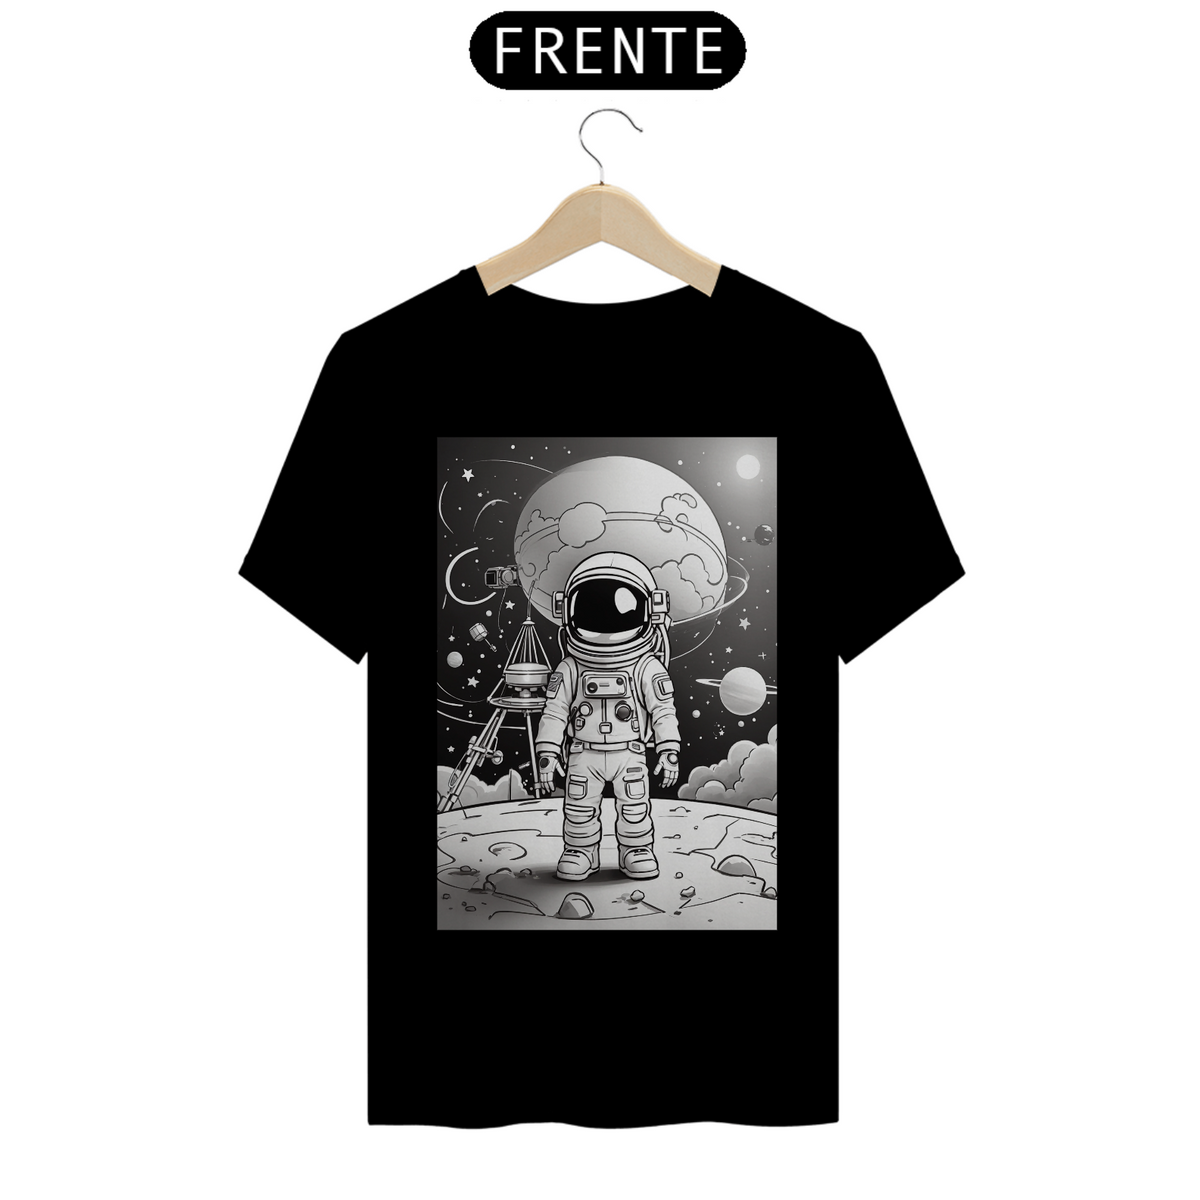 Nome do produto: Camiseta - Homem no espaço